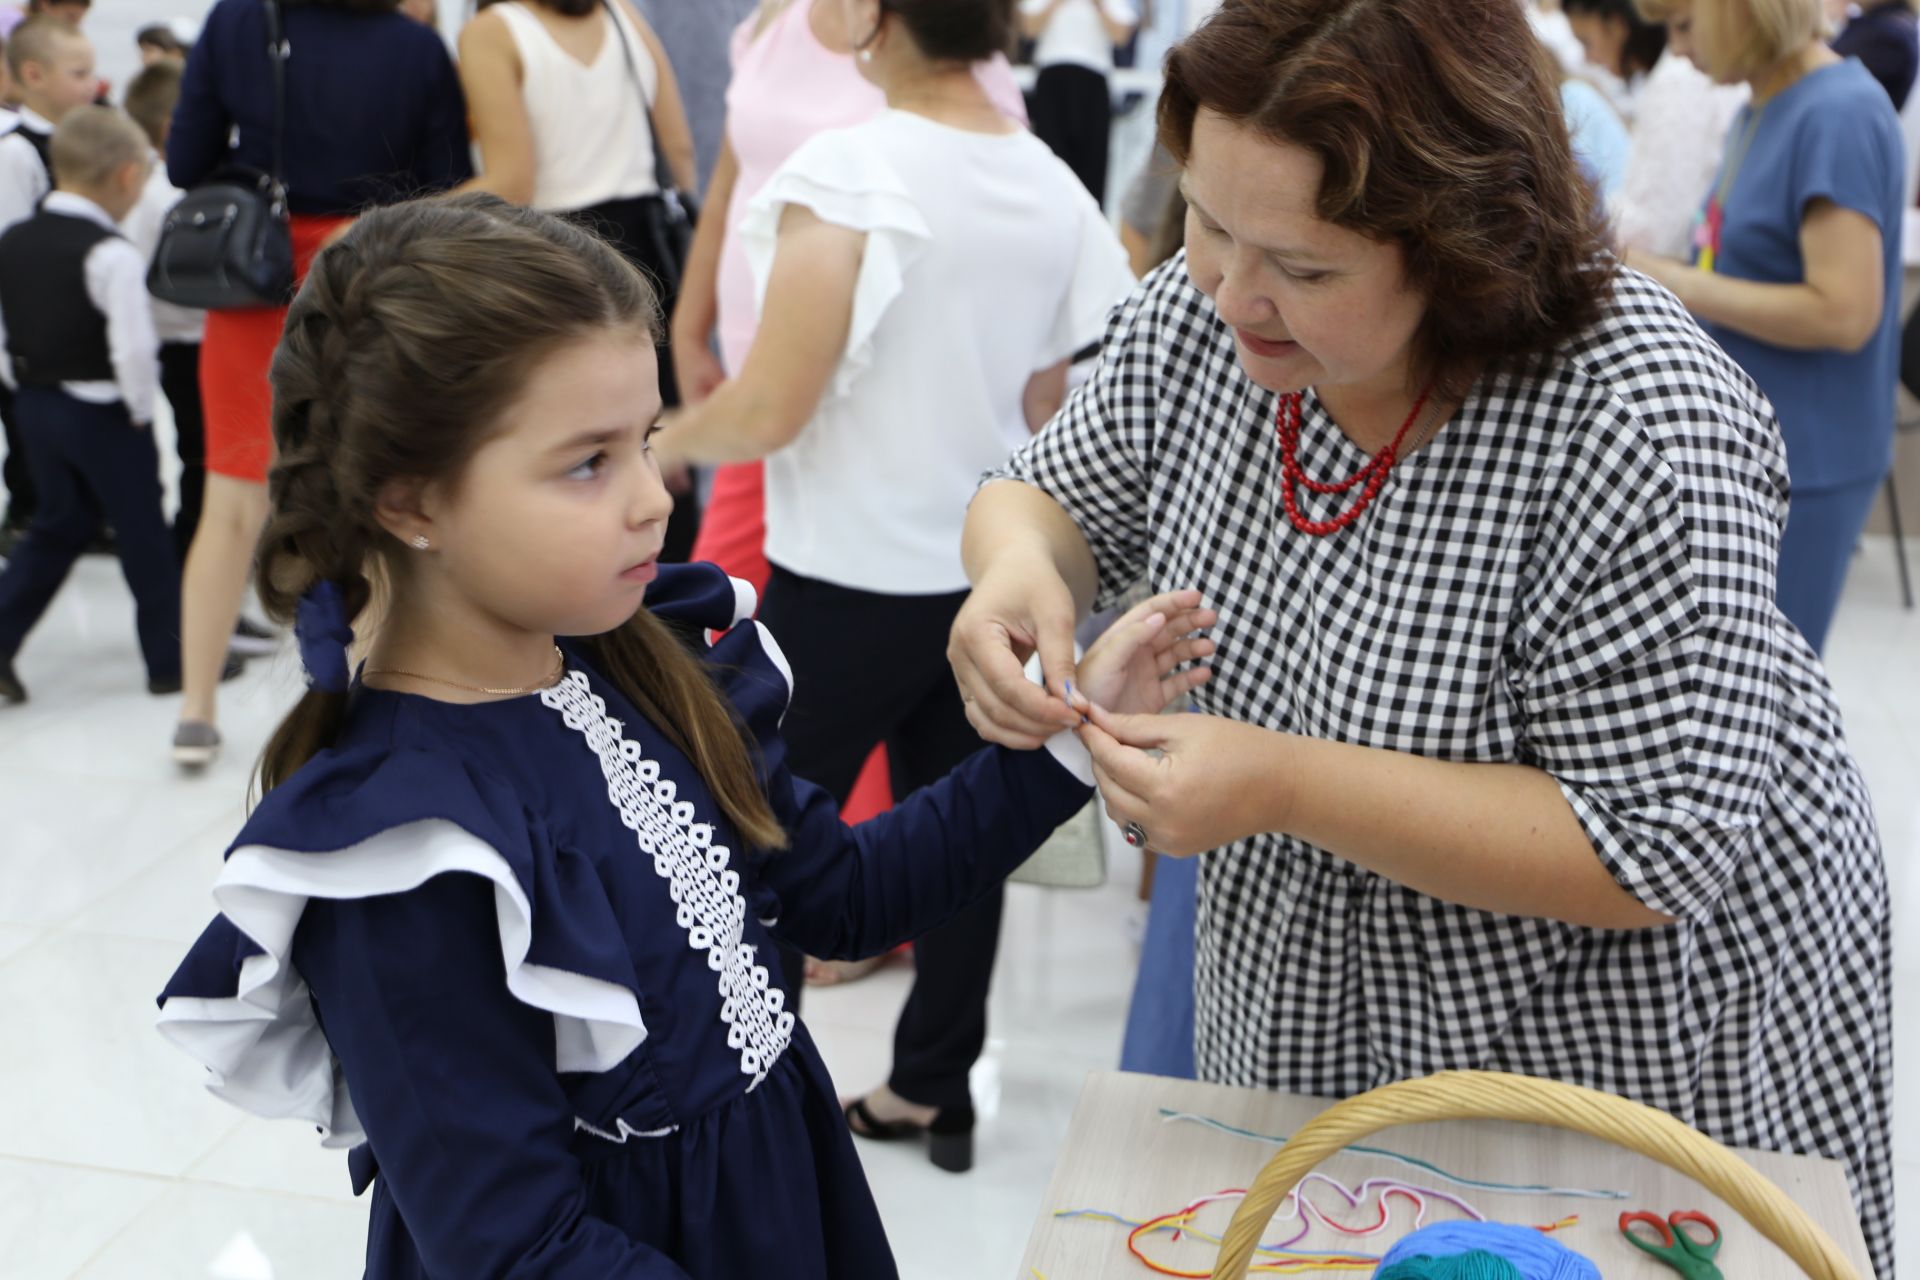 В Алексеевском подвели итоги благотворительной акции «Помоги собраться в школу»